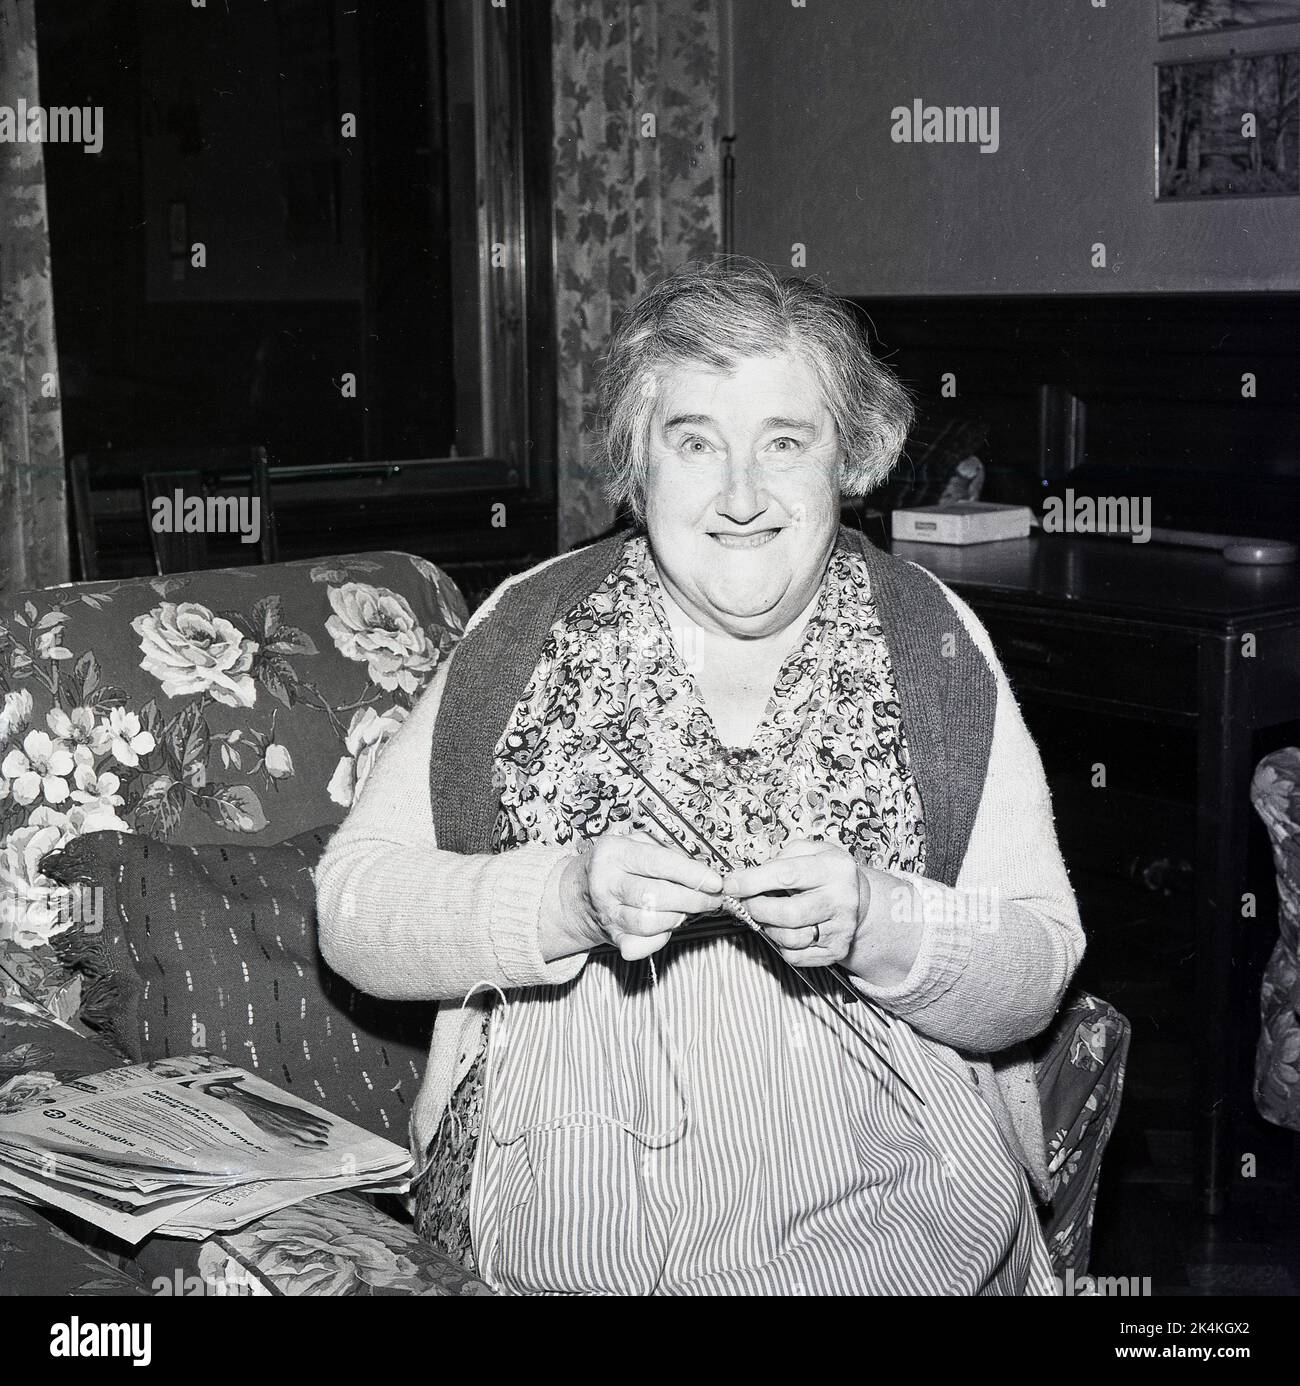 1965, historique, une vieille dame assise, vacillant ses aiguilles à tricoter, dans une maison de vieux gens souriant pour une photo, Écosse, Royaume-Uni. Banque D'Images